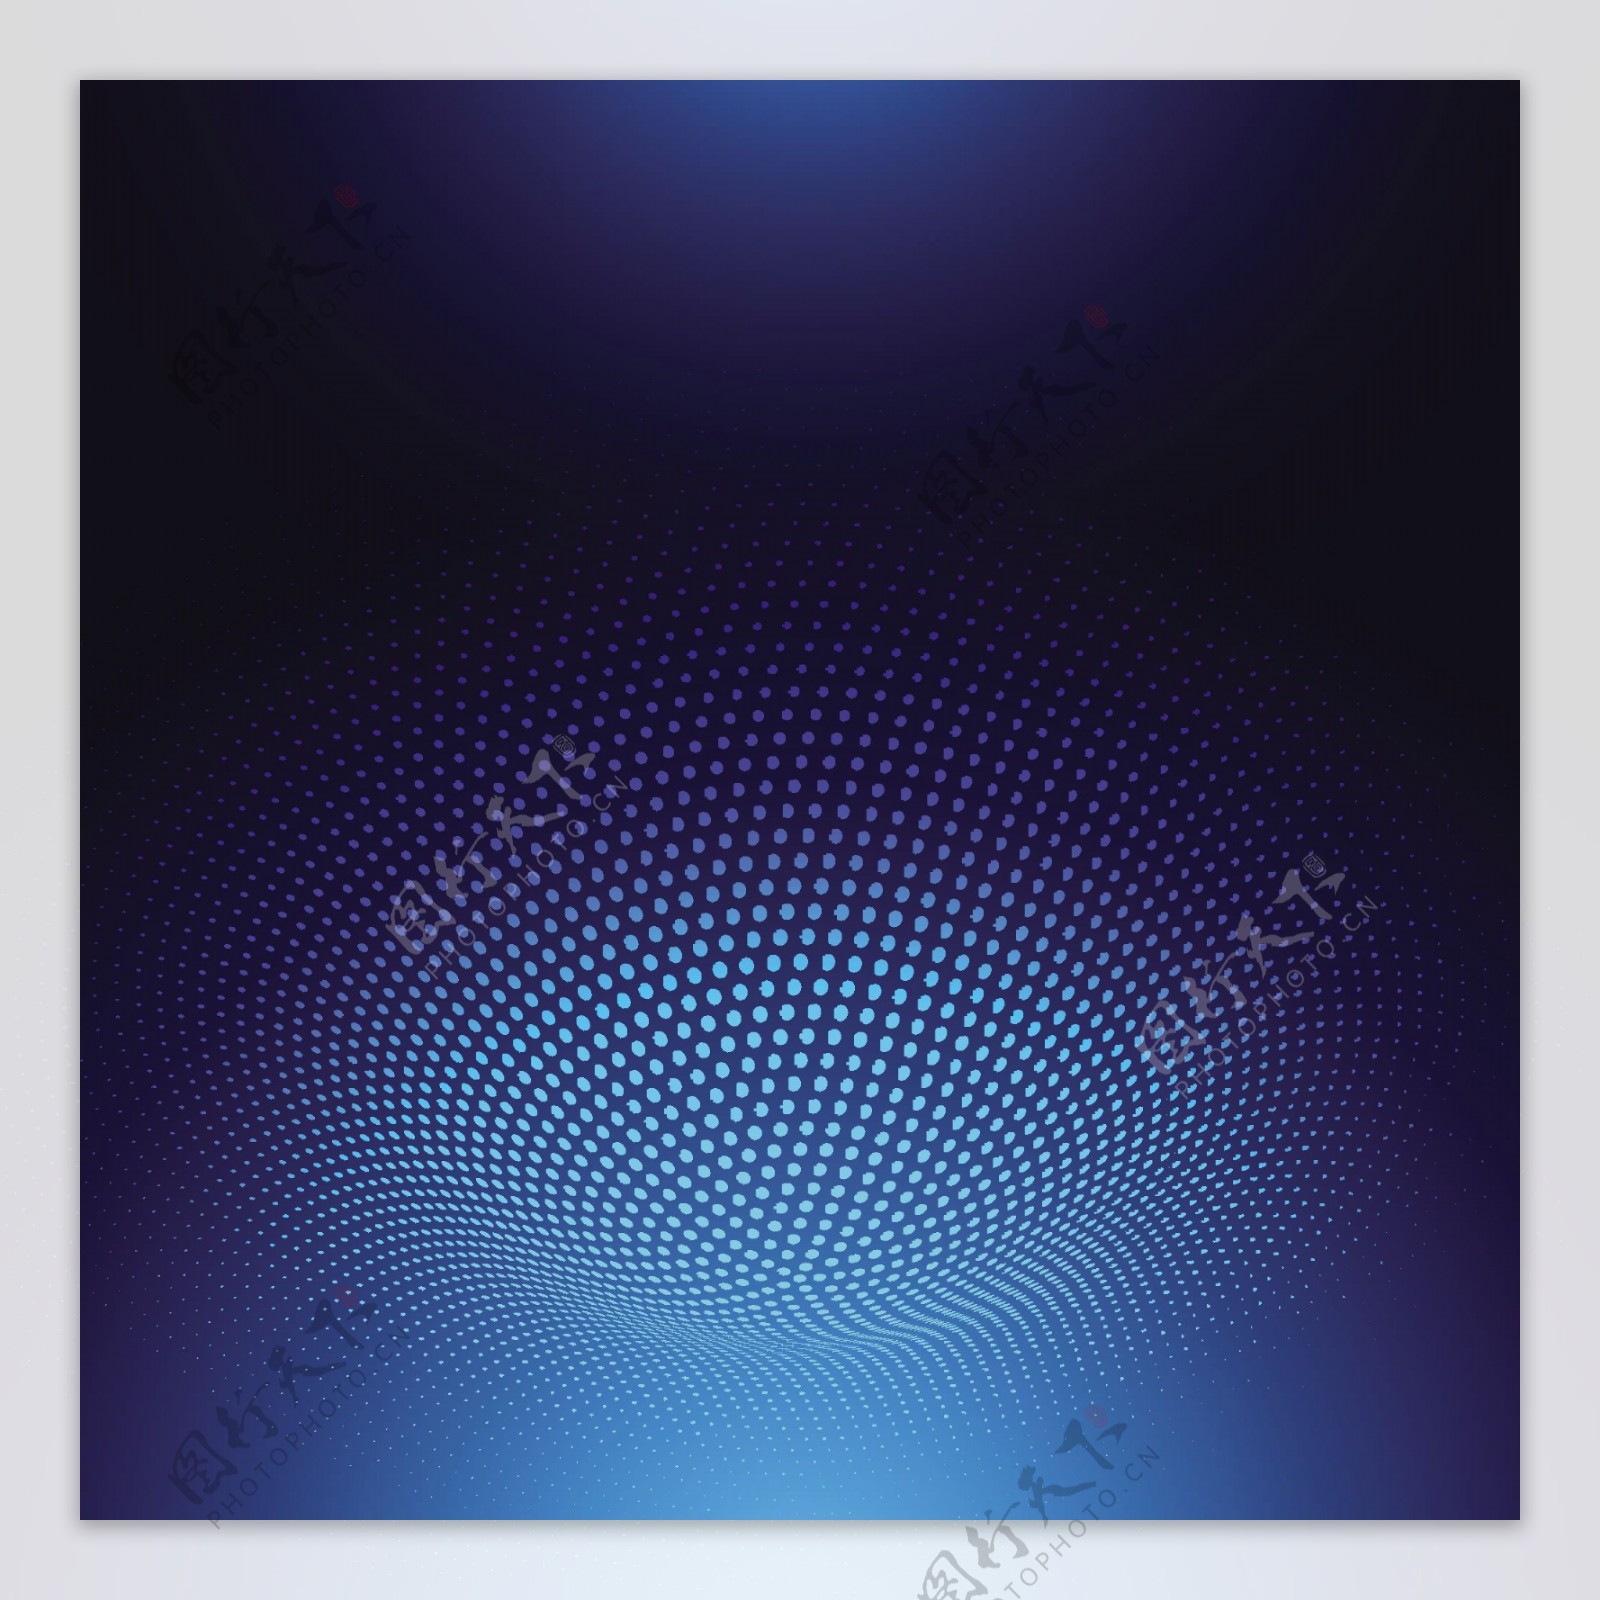 抽象蓝色圆环点孔旋窝背景